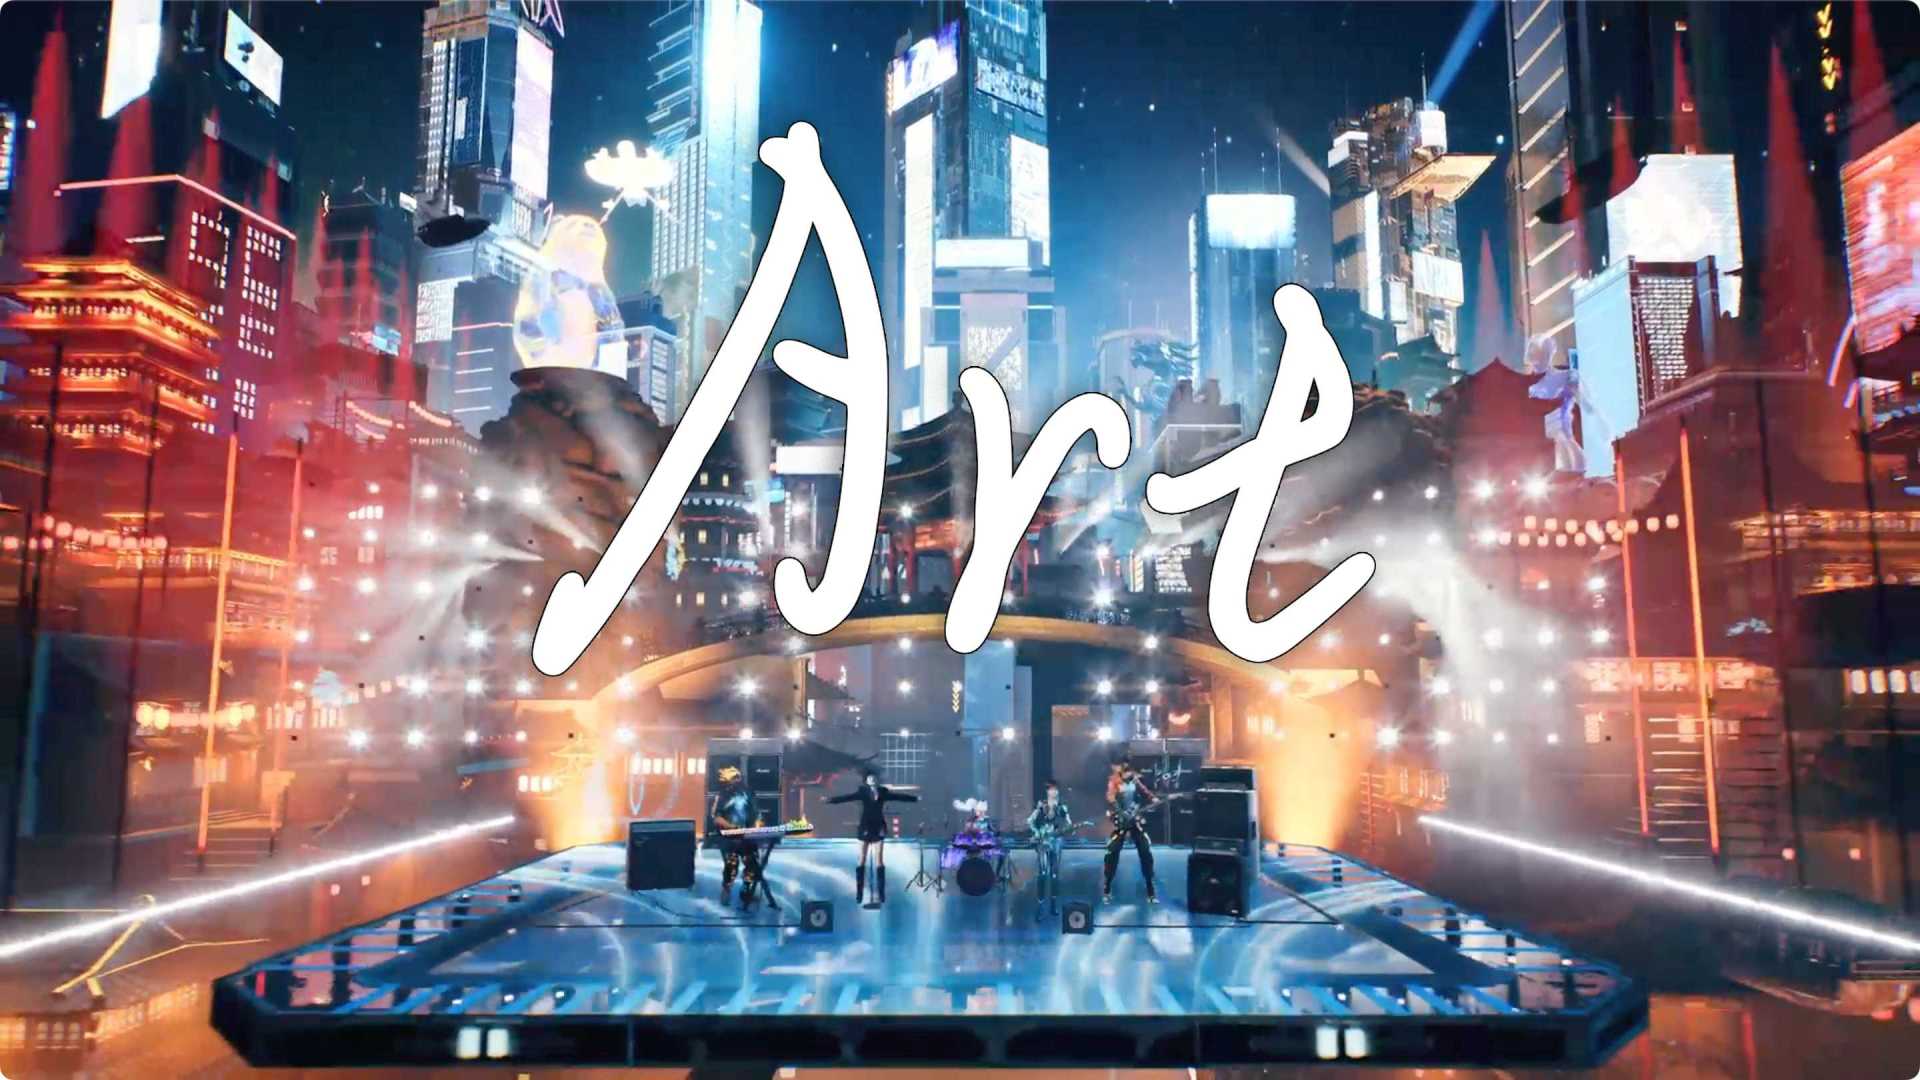 湖南卫视跨年演唱会 姚安娜x元宇宙乐队《ART》 虚拟制片元宇宙音乐秀